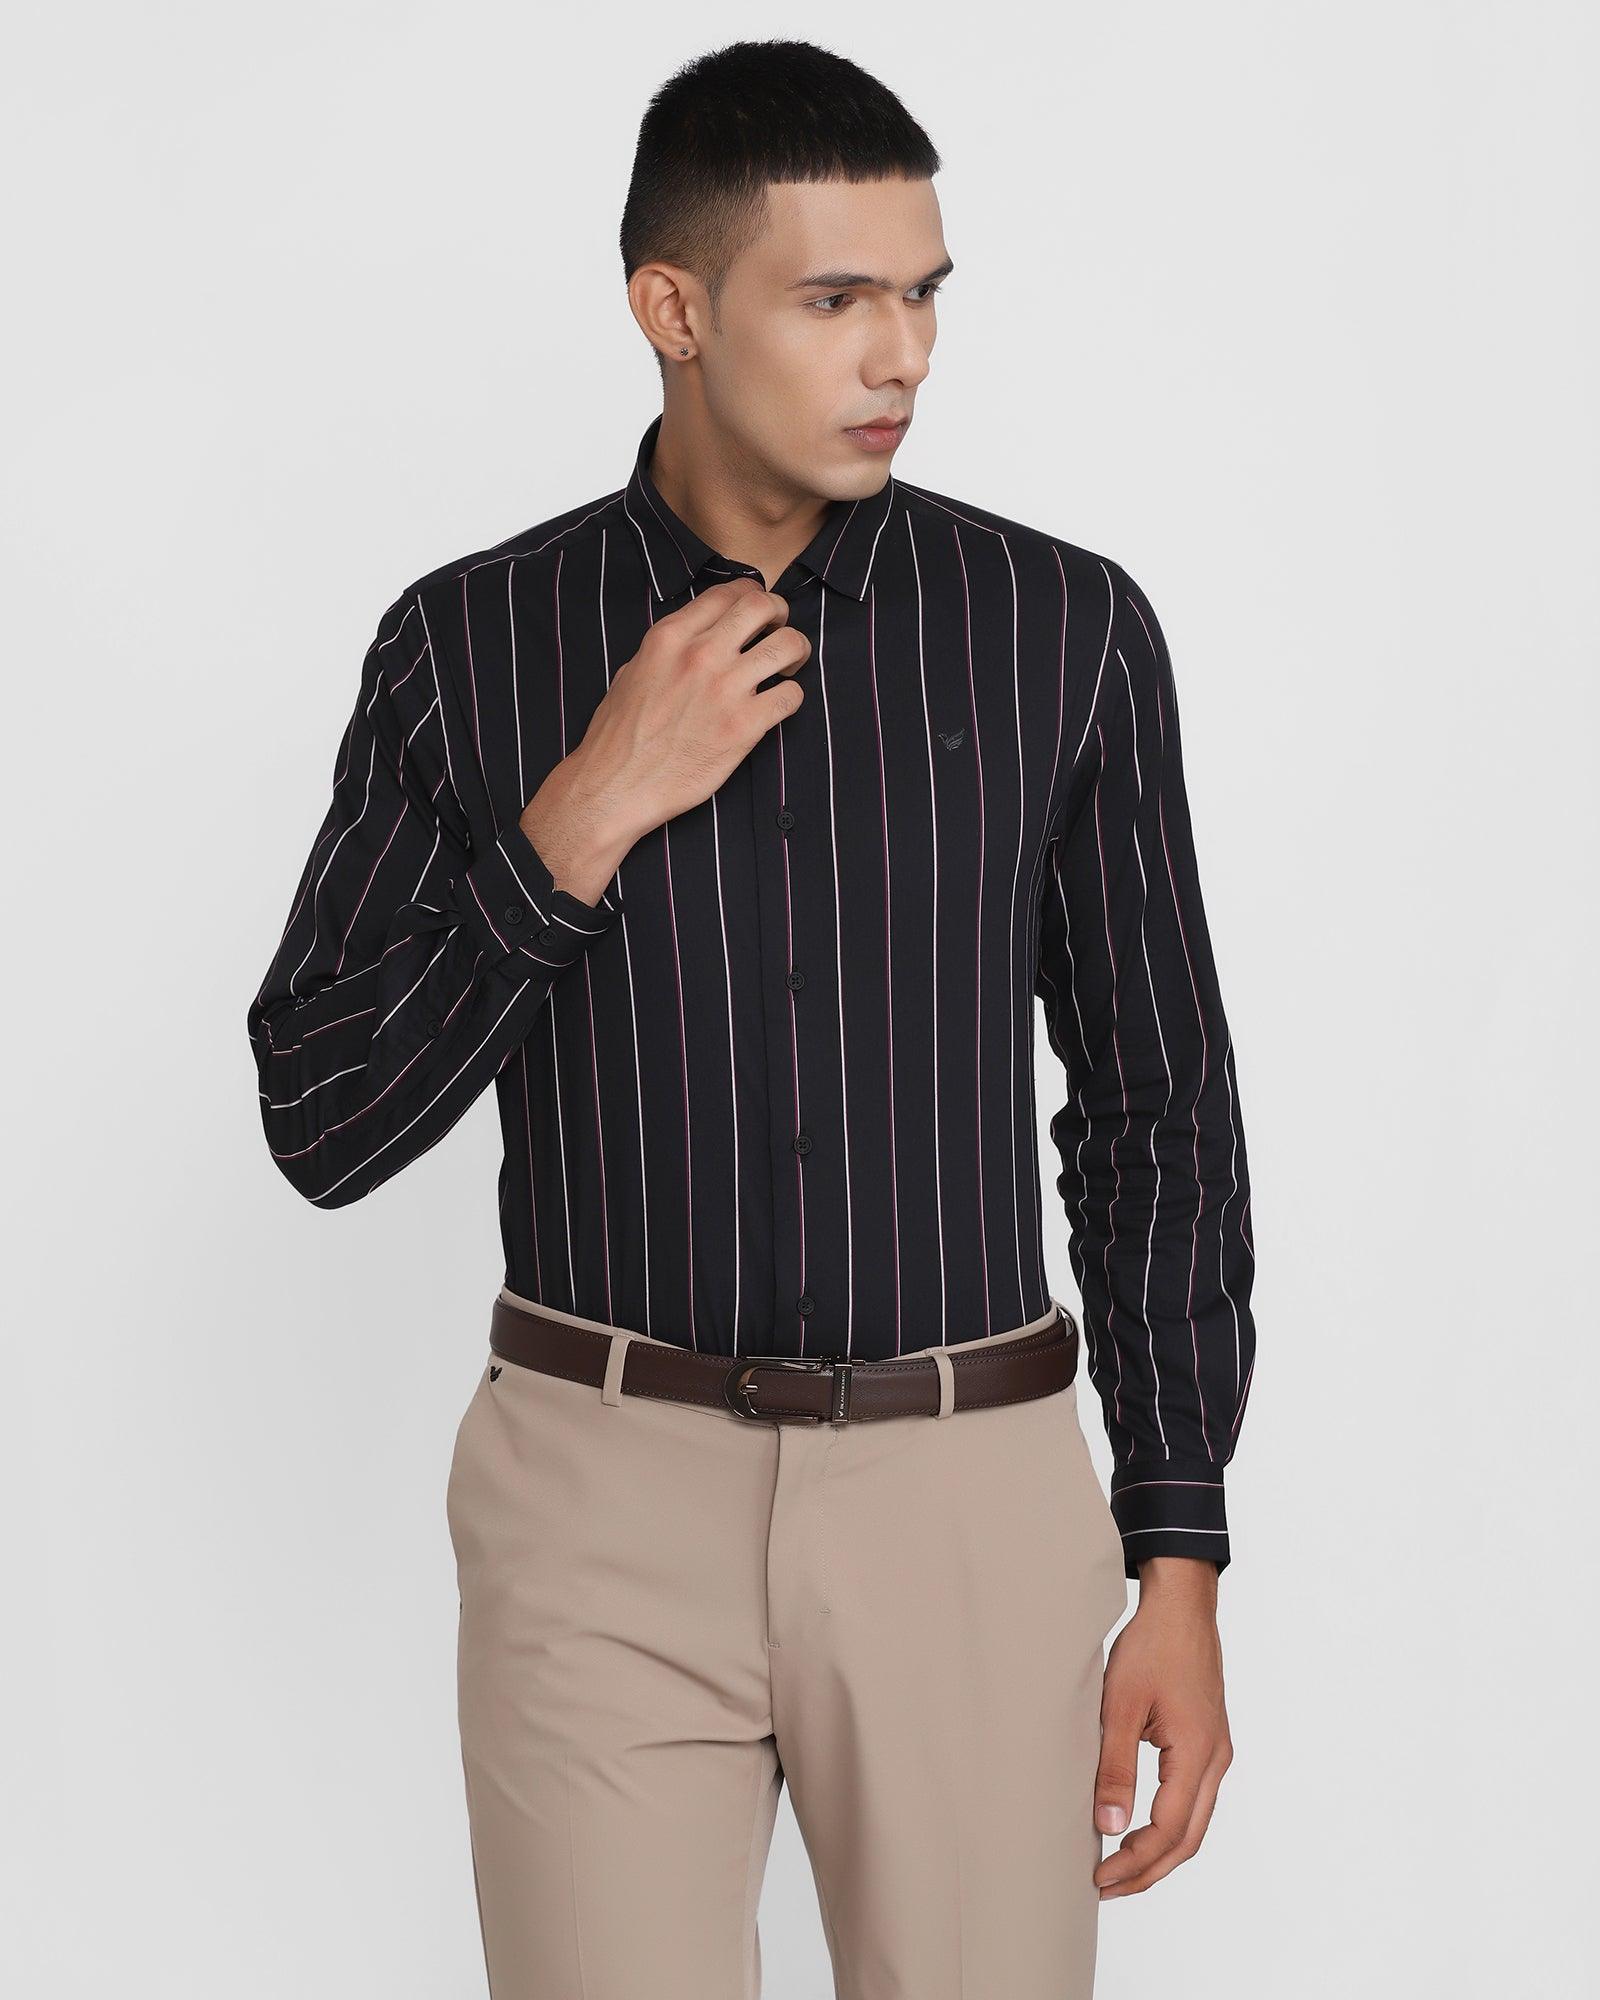 TechPro Formal Black Striped Shirt - Larsen